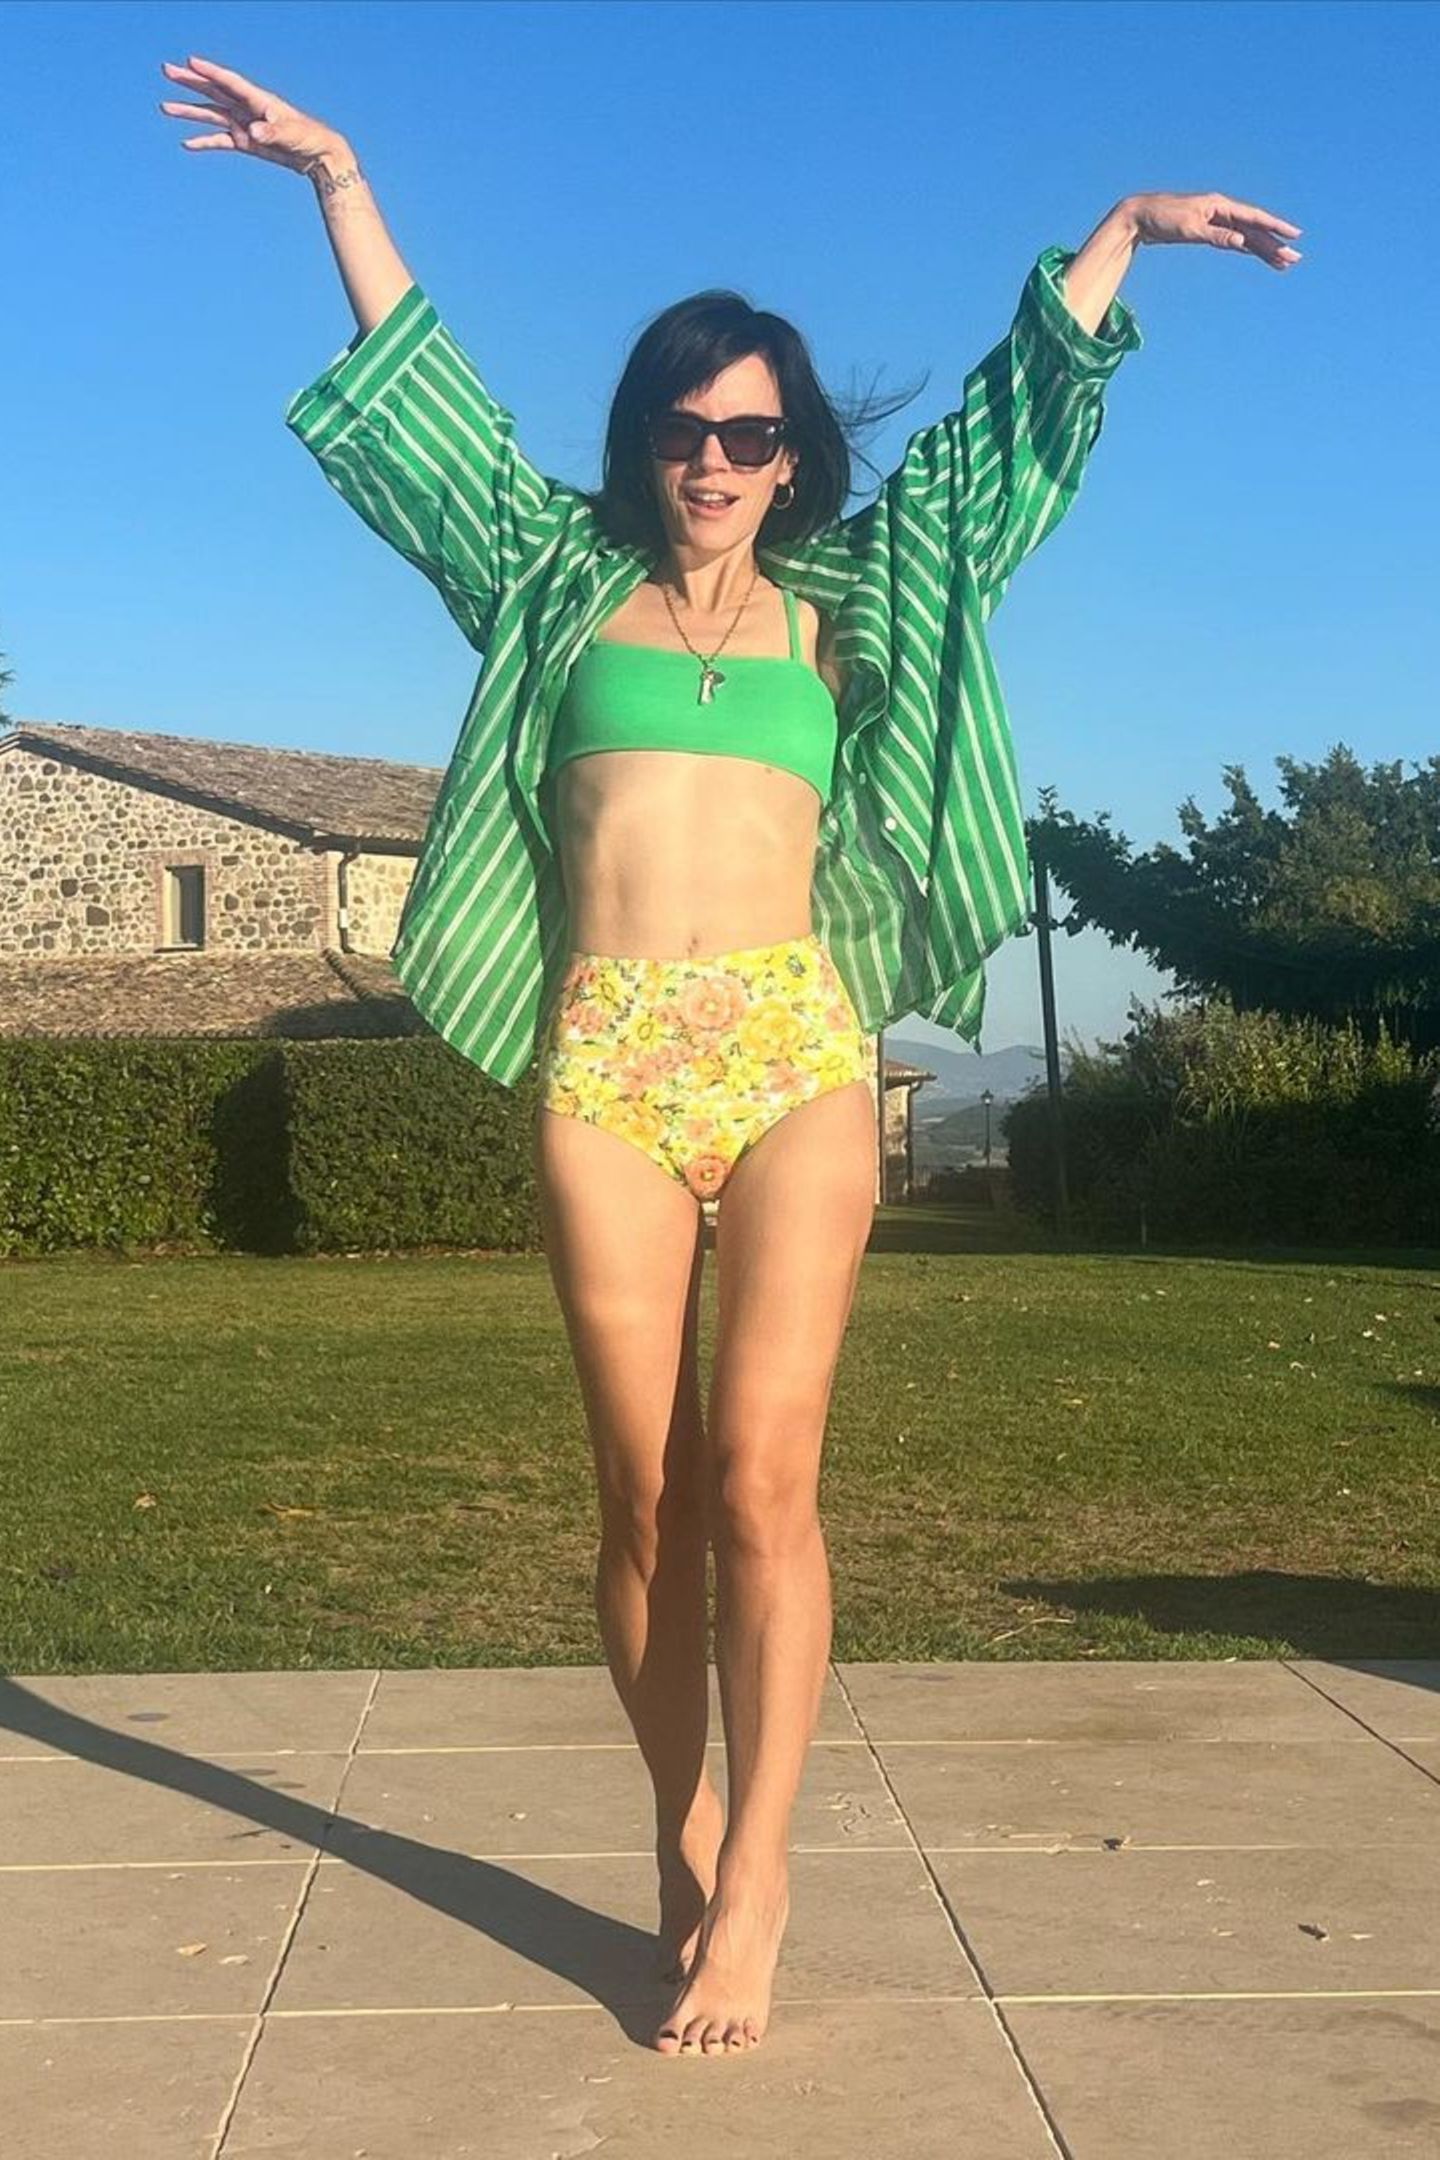 In Italien lässt Lily Allen sich von der Sonne verwöhnen. Passend zu dem warmen Wetter posiert sie in einer Blumen-Muster-Bikinihose. Das gelbfarbene High-Waist-Höschen kombiniert sie mit einem knallgrünen Bikinitop. Für ein wenig Abdeckung sorgt eine grün-weiß gestreifte Bluse. Der luftige Look schreit förmlich nach Sommer.